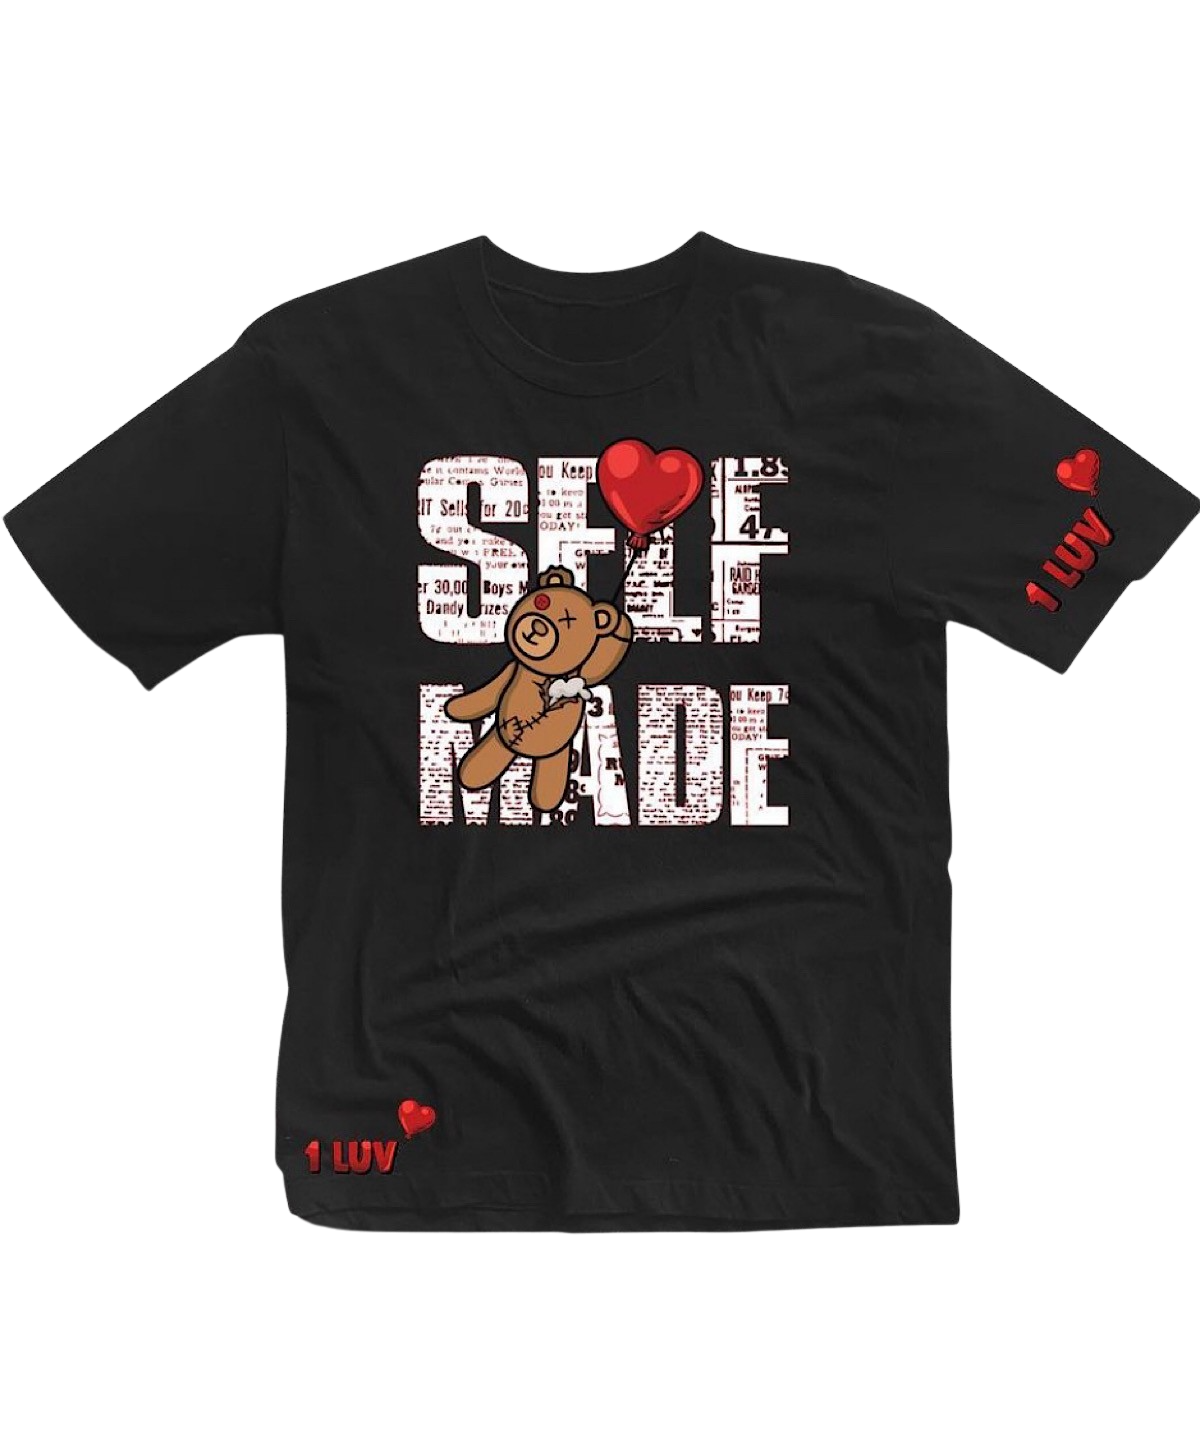 1Luv "Self Made" Shirt